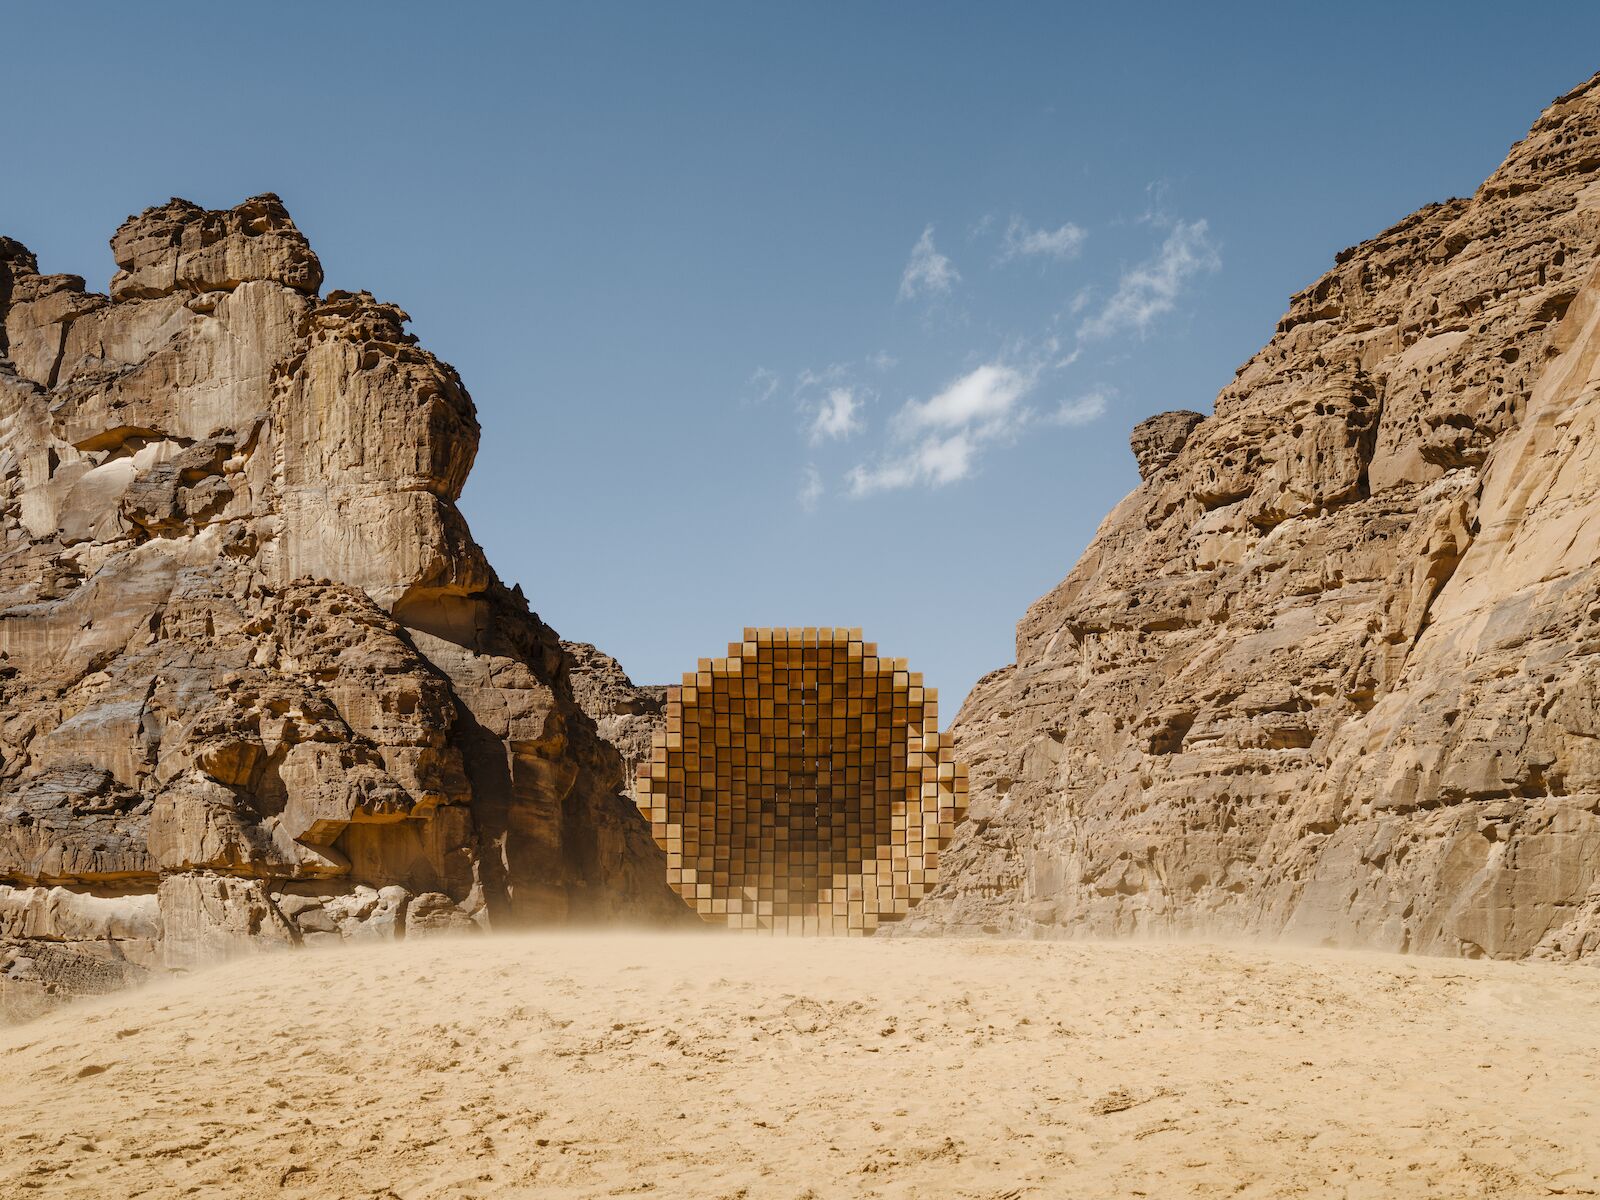 Art installation of a large wooden refuge in the Saudi Arabian desert for Desert X 2022.